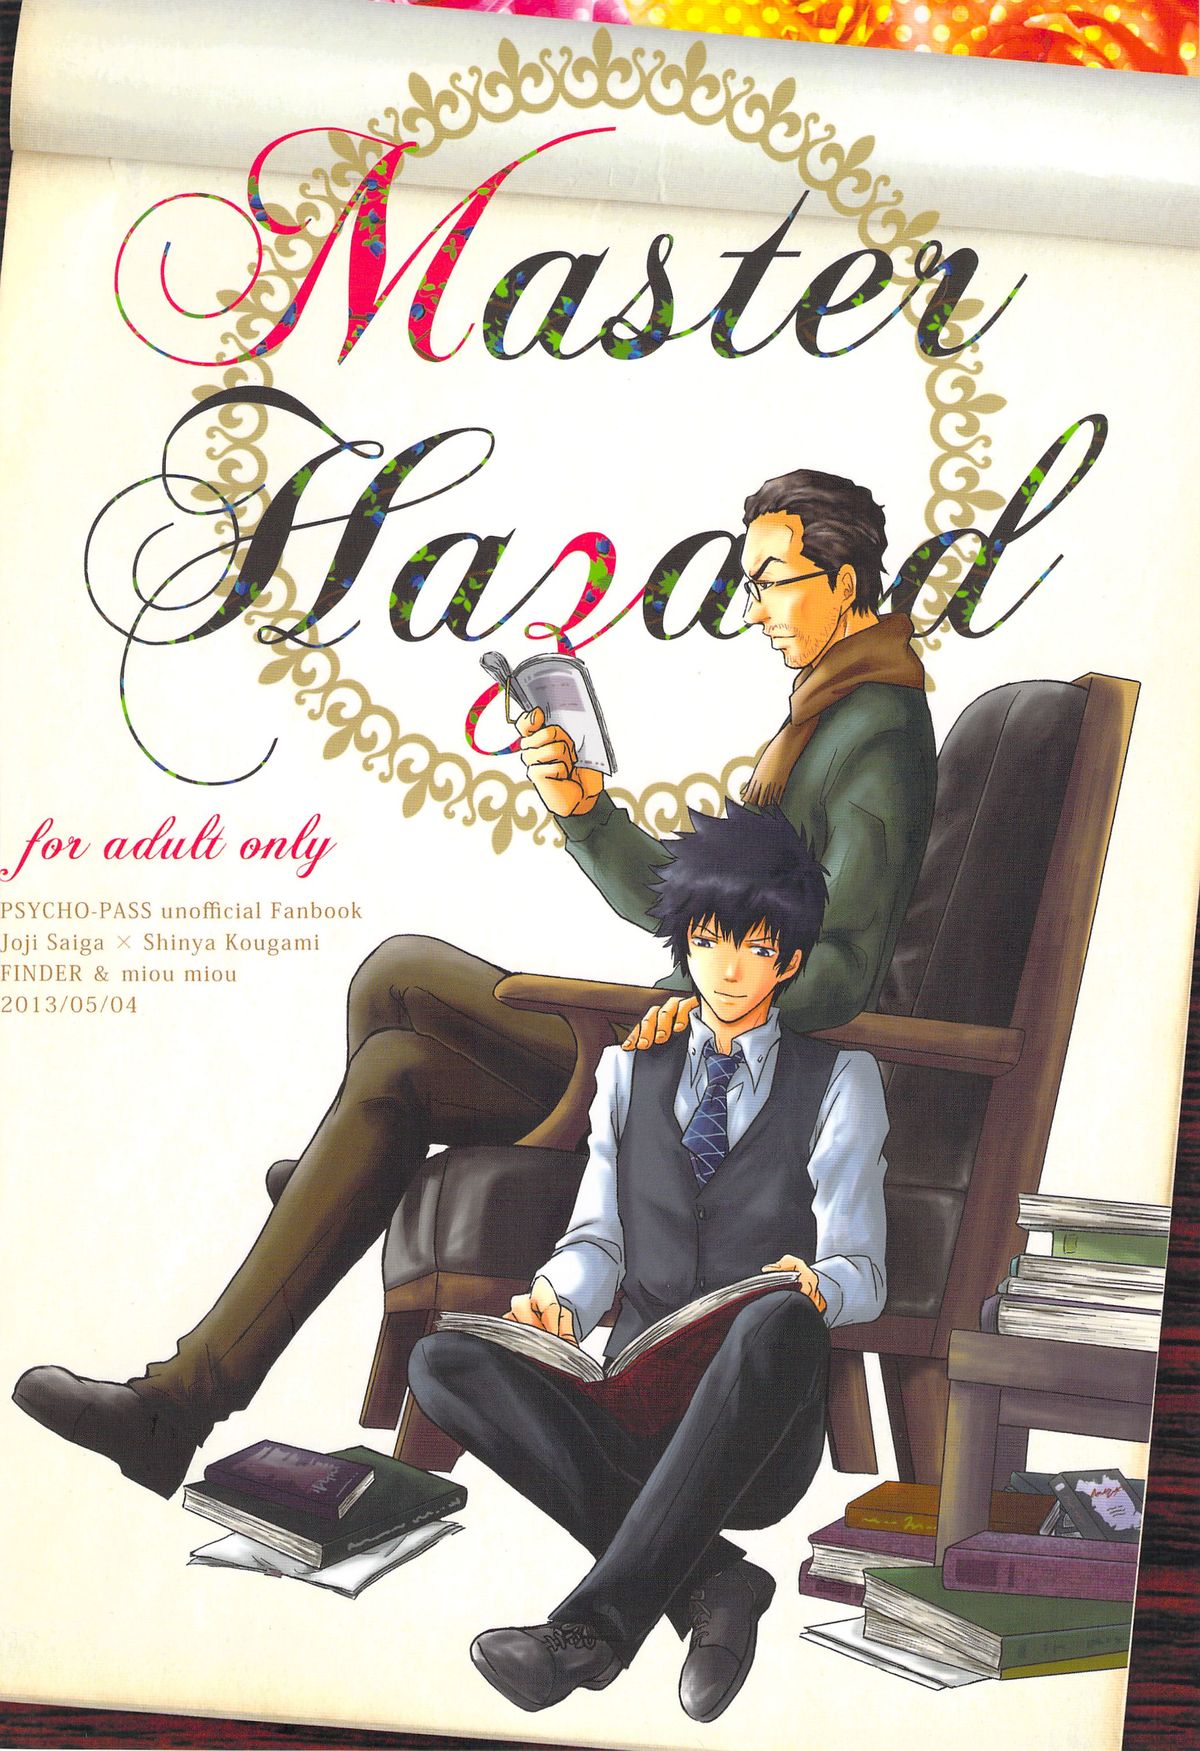 [FINDER, miou miou (Mukai Yuuya, Nana)] Master Hazard (Psycho-Pass) page 2 full